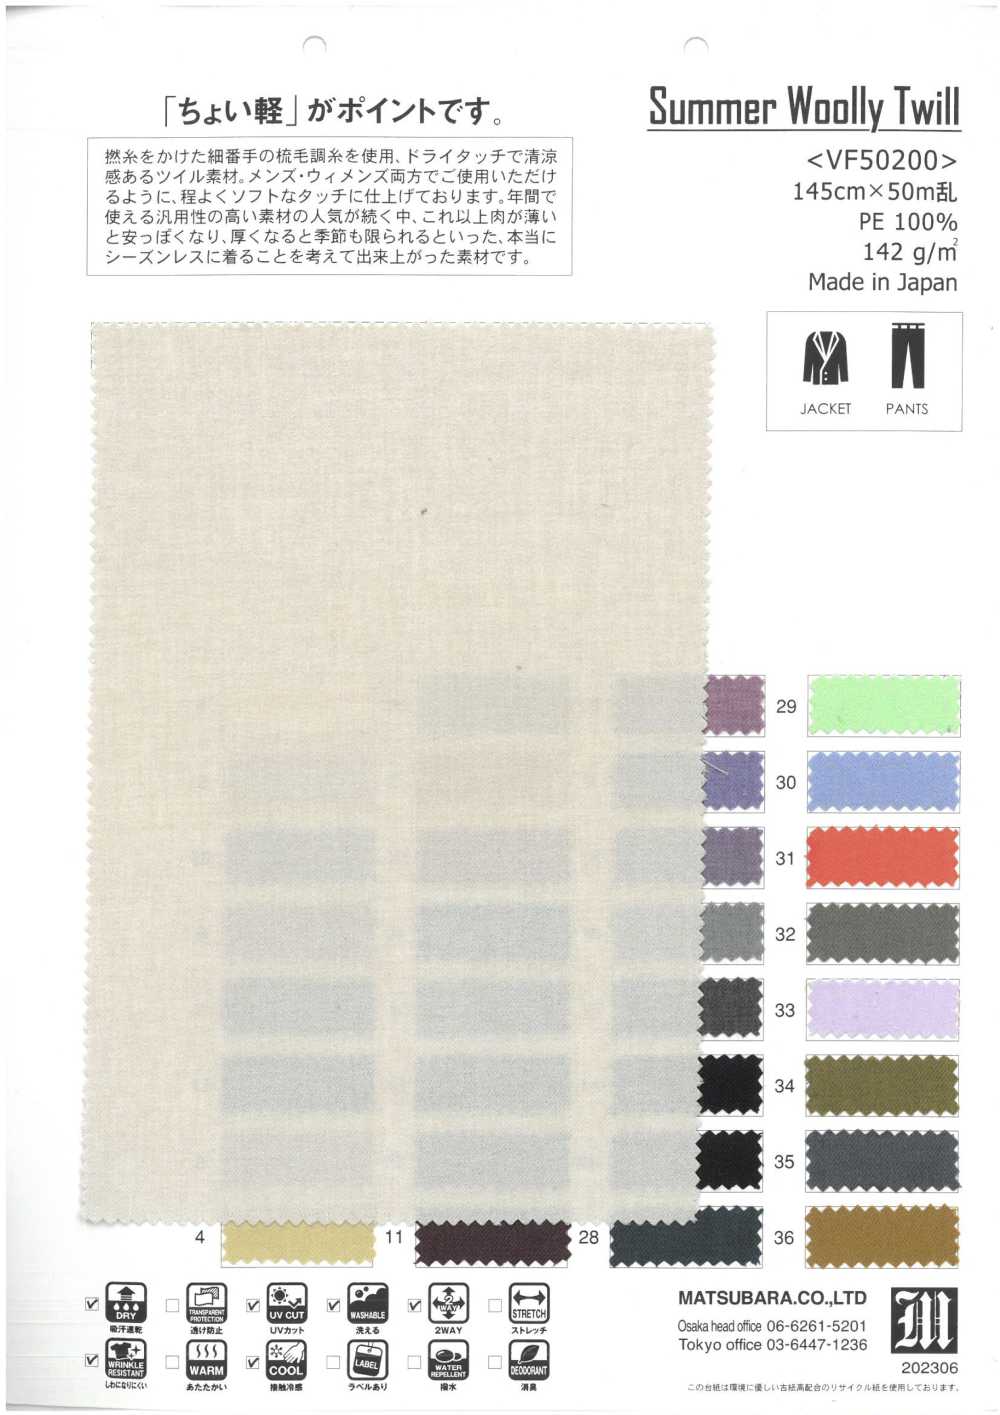 VF50200 Sarga Lanuda De Verano[Fabrica Textil] Matsubara